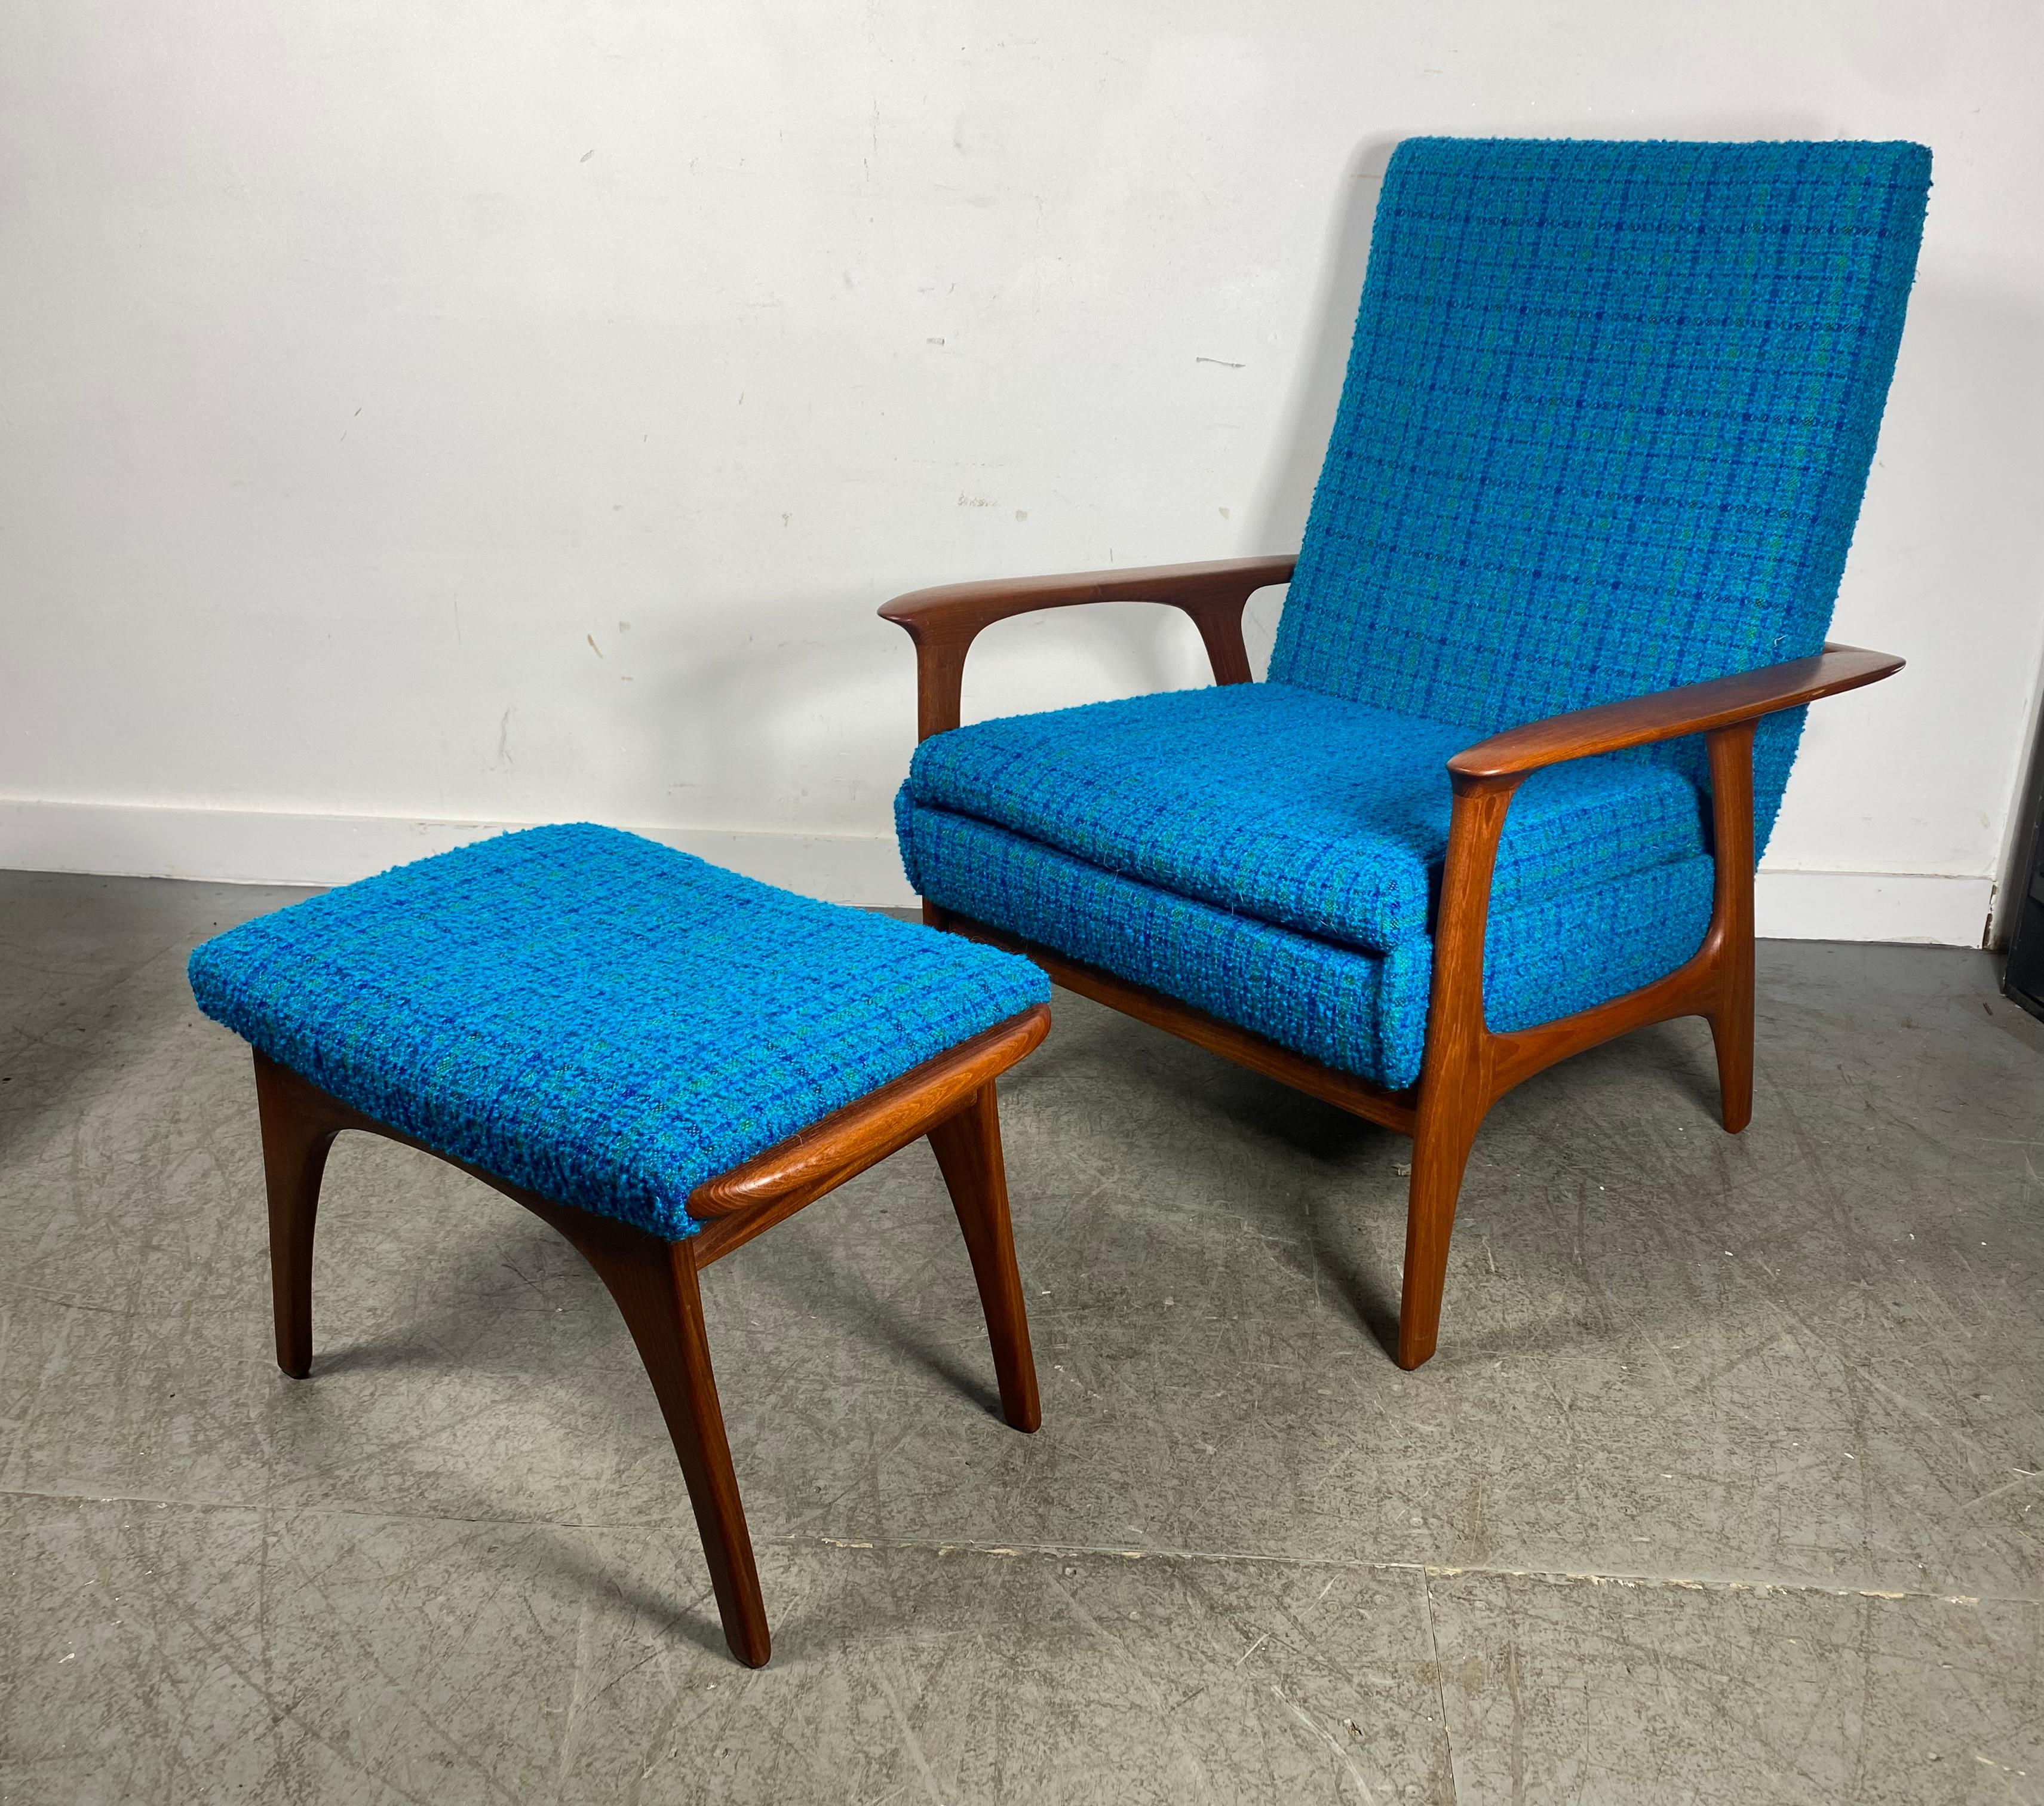 Classic Scandinavian Modern Teak Lounge Chair and Ottoman, after Hans Wegner 1